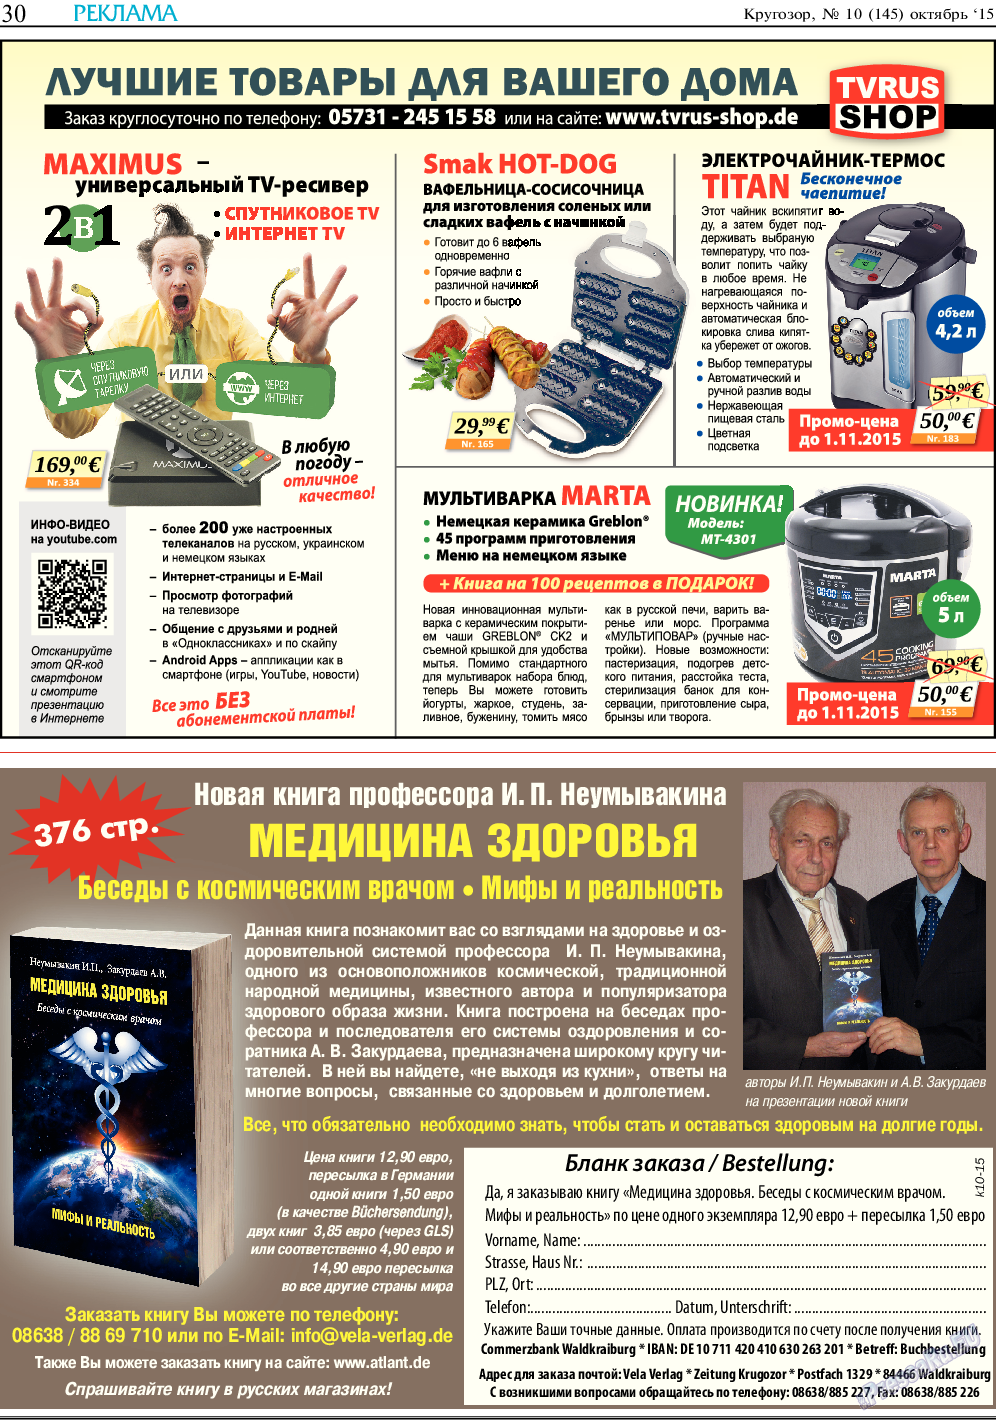 Кругозор (газета). 2015 год, номер 10, стр. 30